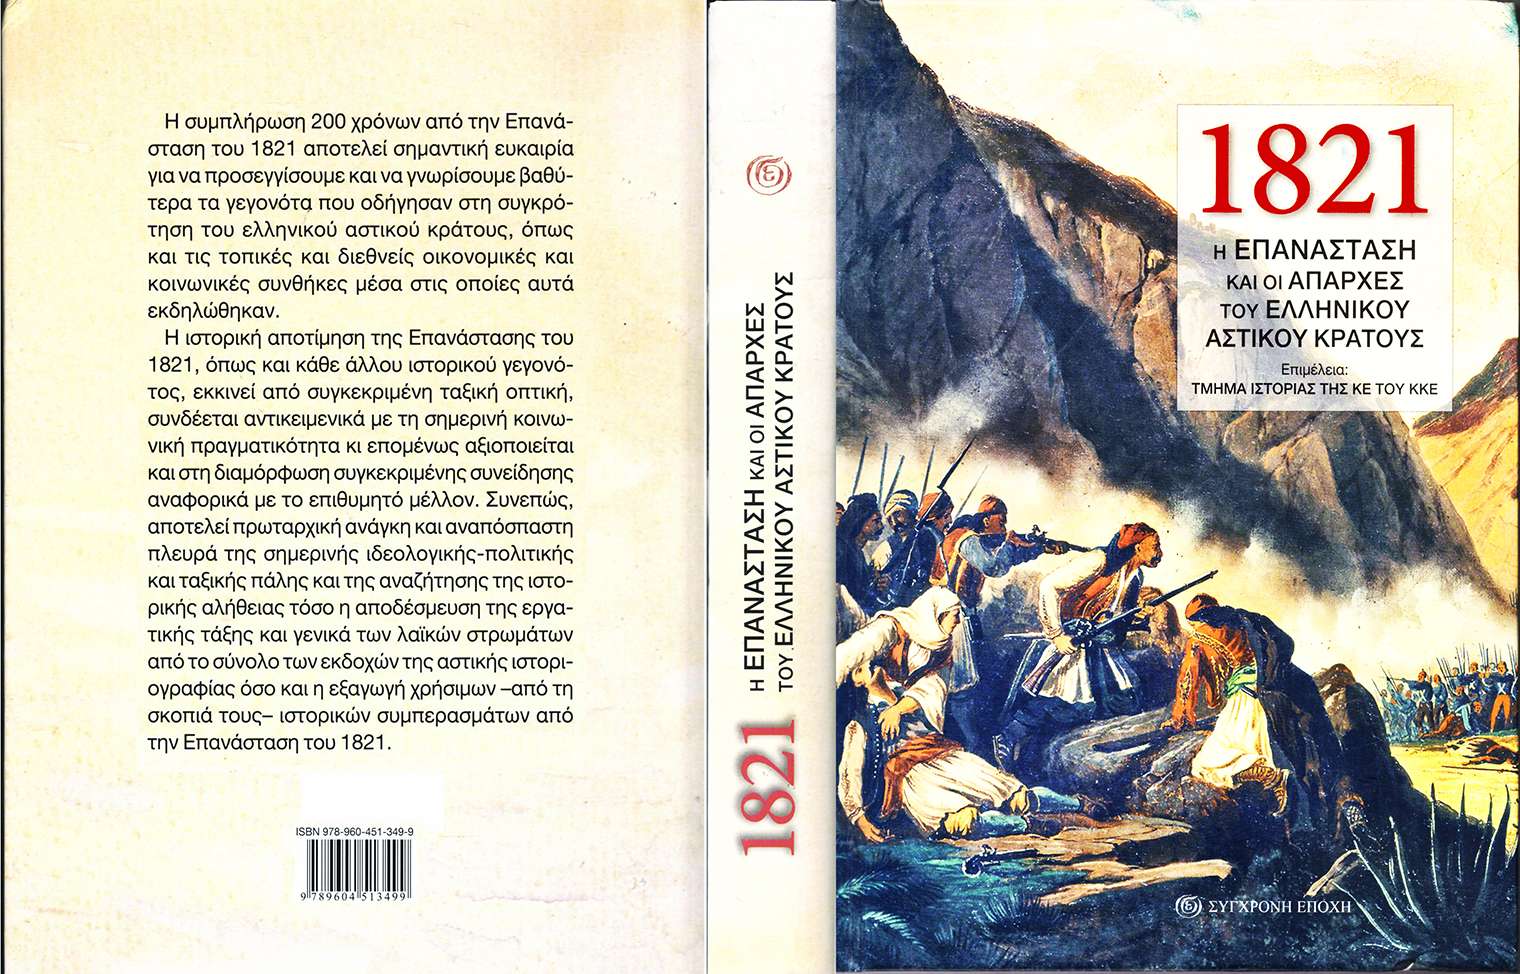 1821 Η επανάσταση και οι απαρχές του ελληνικού αστικού κράτους